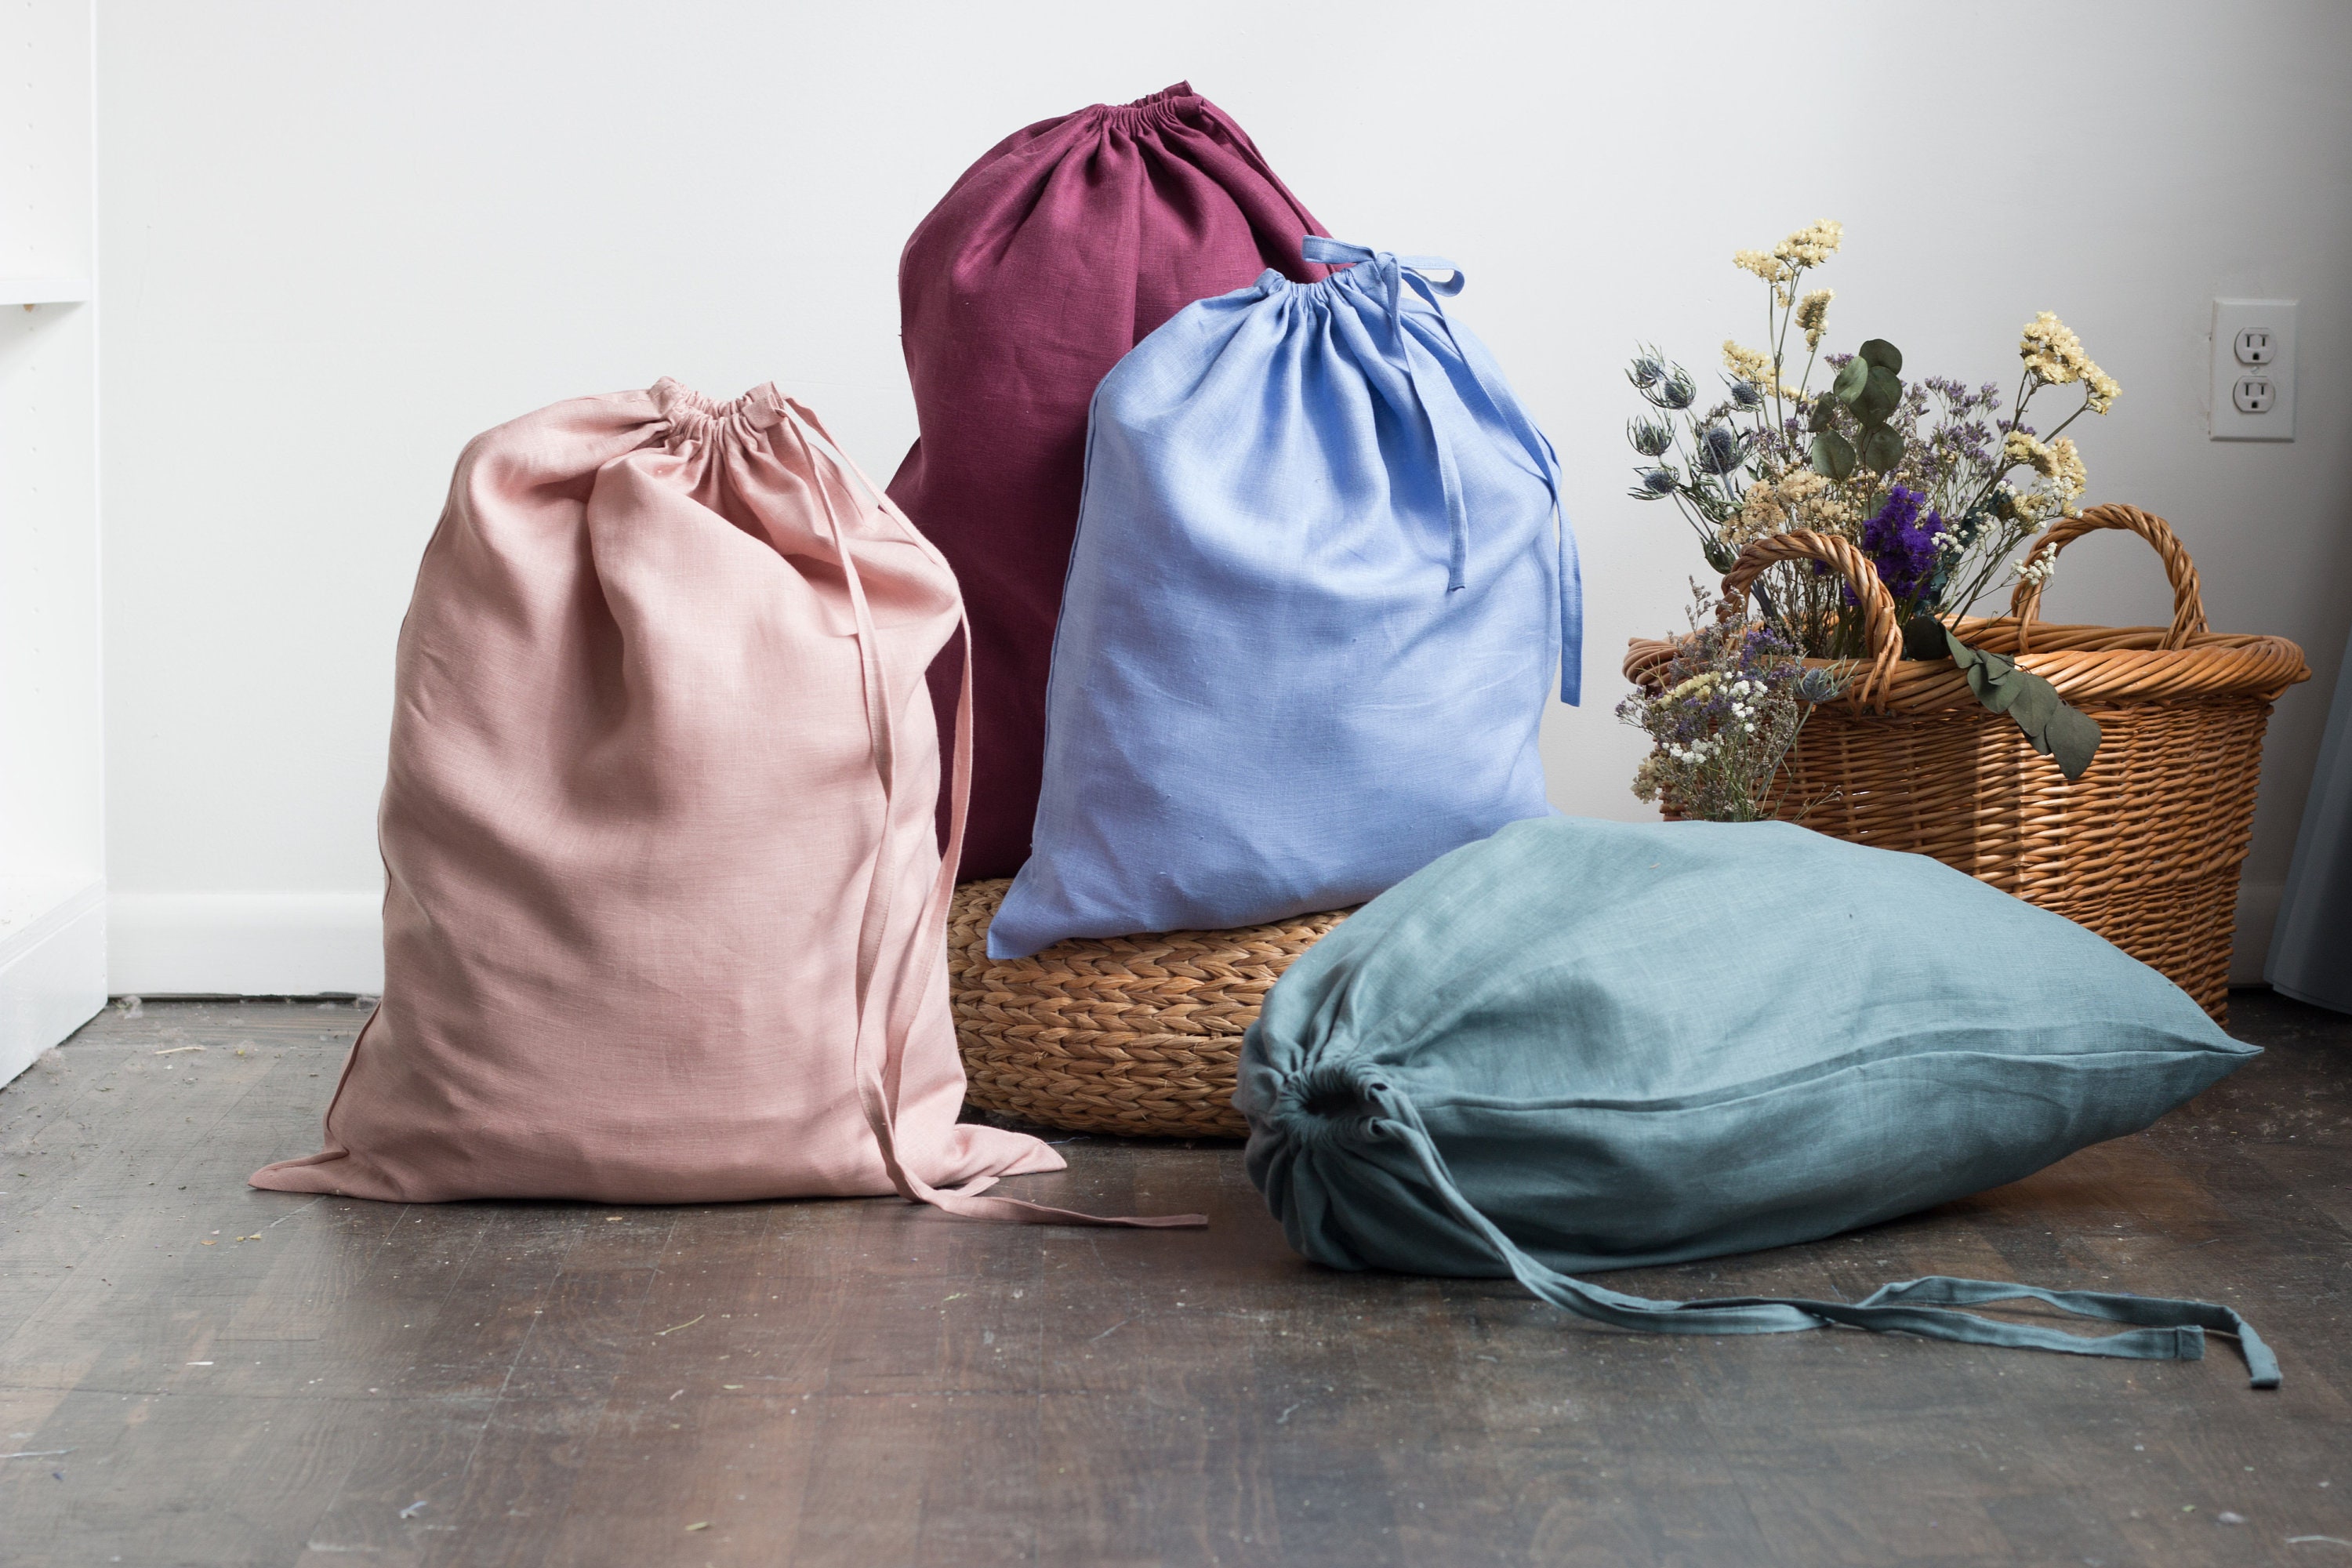 Delicates Mesh Laundry Bag - Hosiery Bag 6+1 Set: 2 Jumbo 2 Large 2 Medium  & Ironing Clothes - Colored Mesh Washing Drying Laundry Bag for Bra